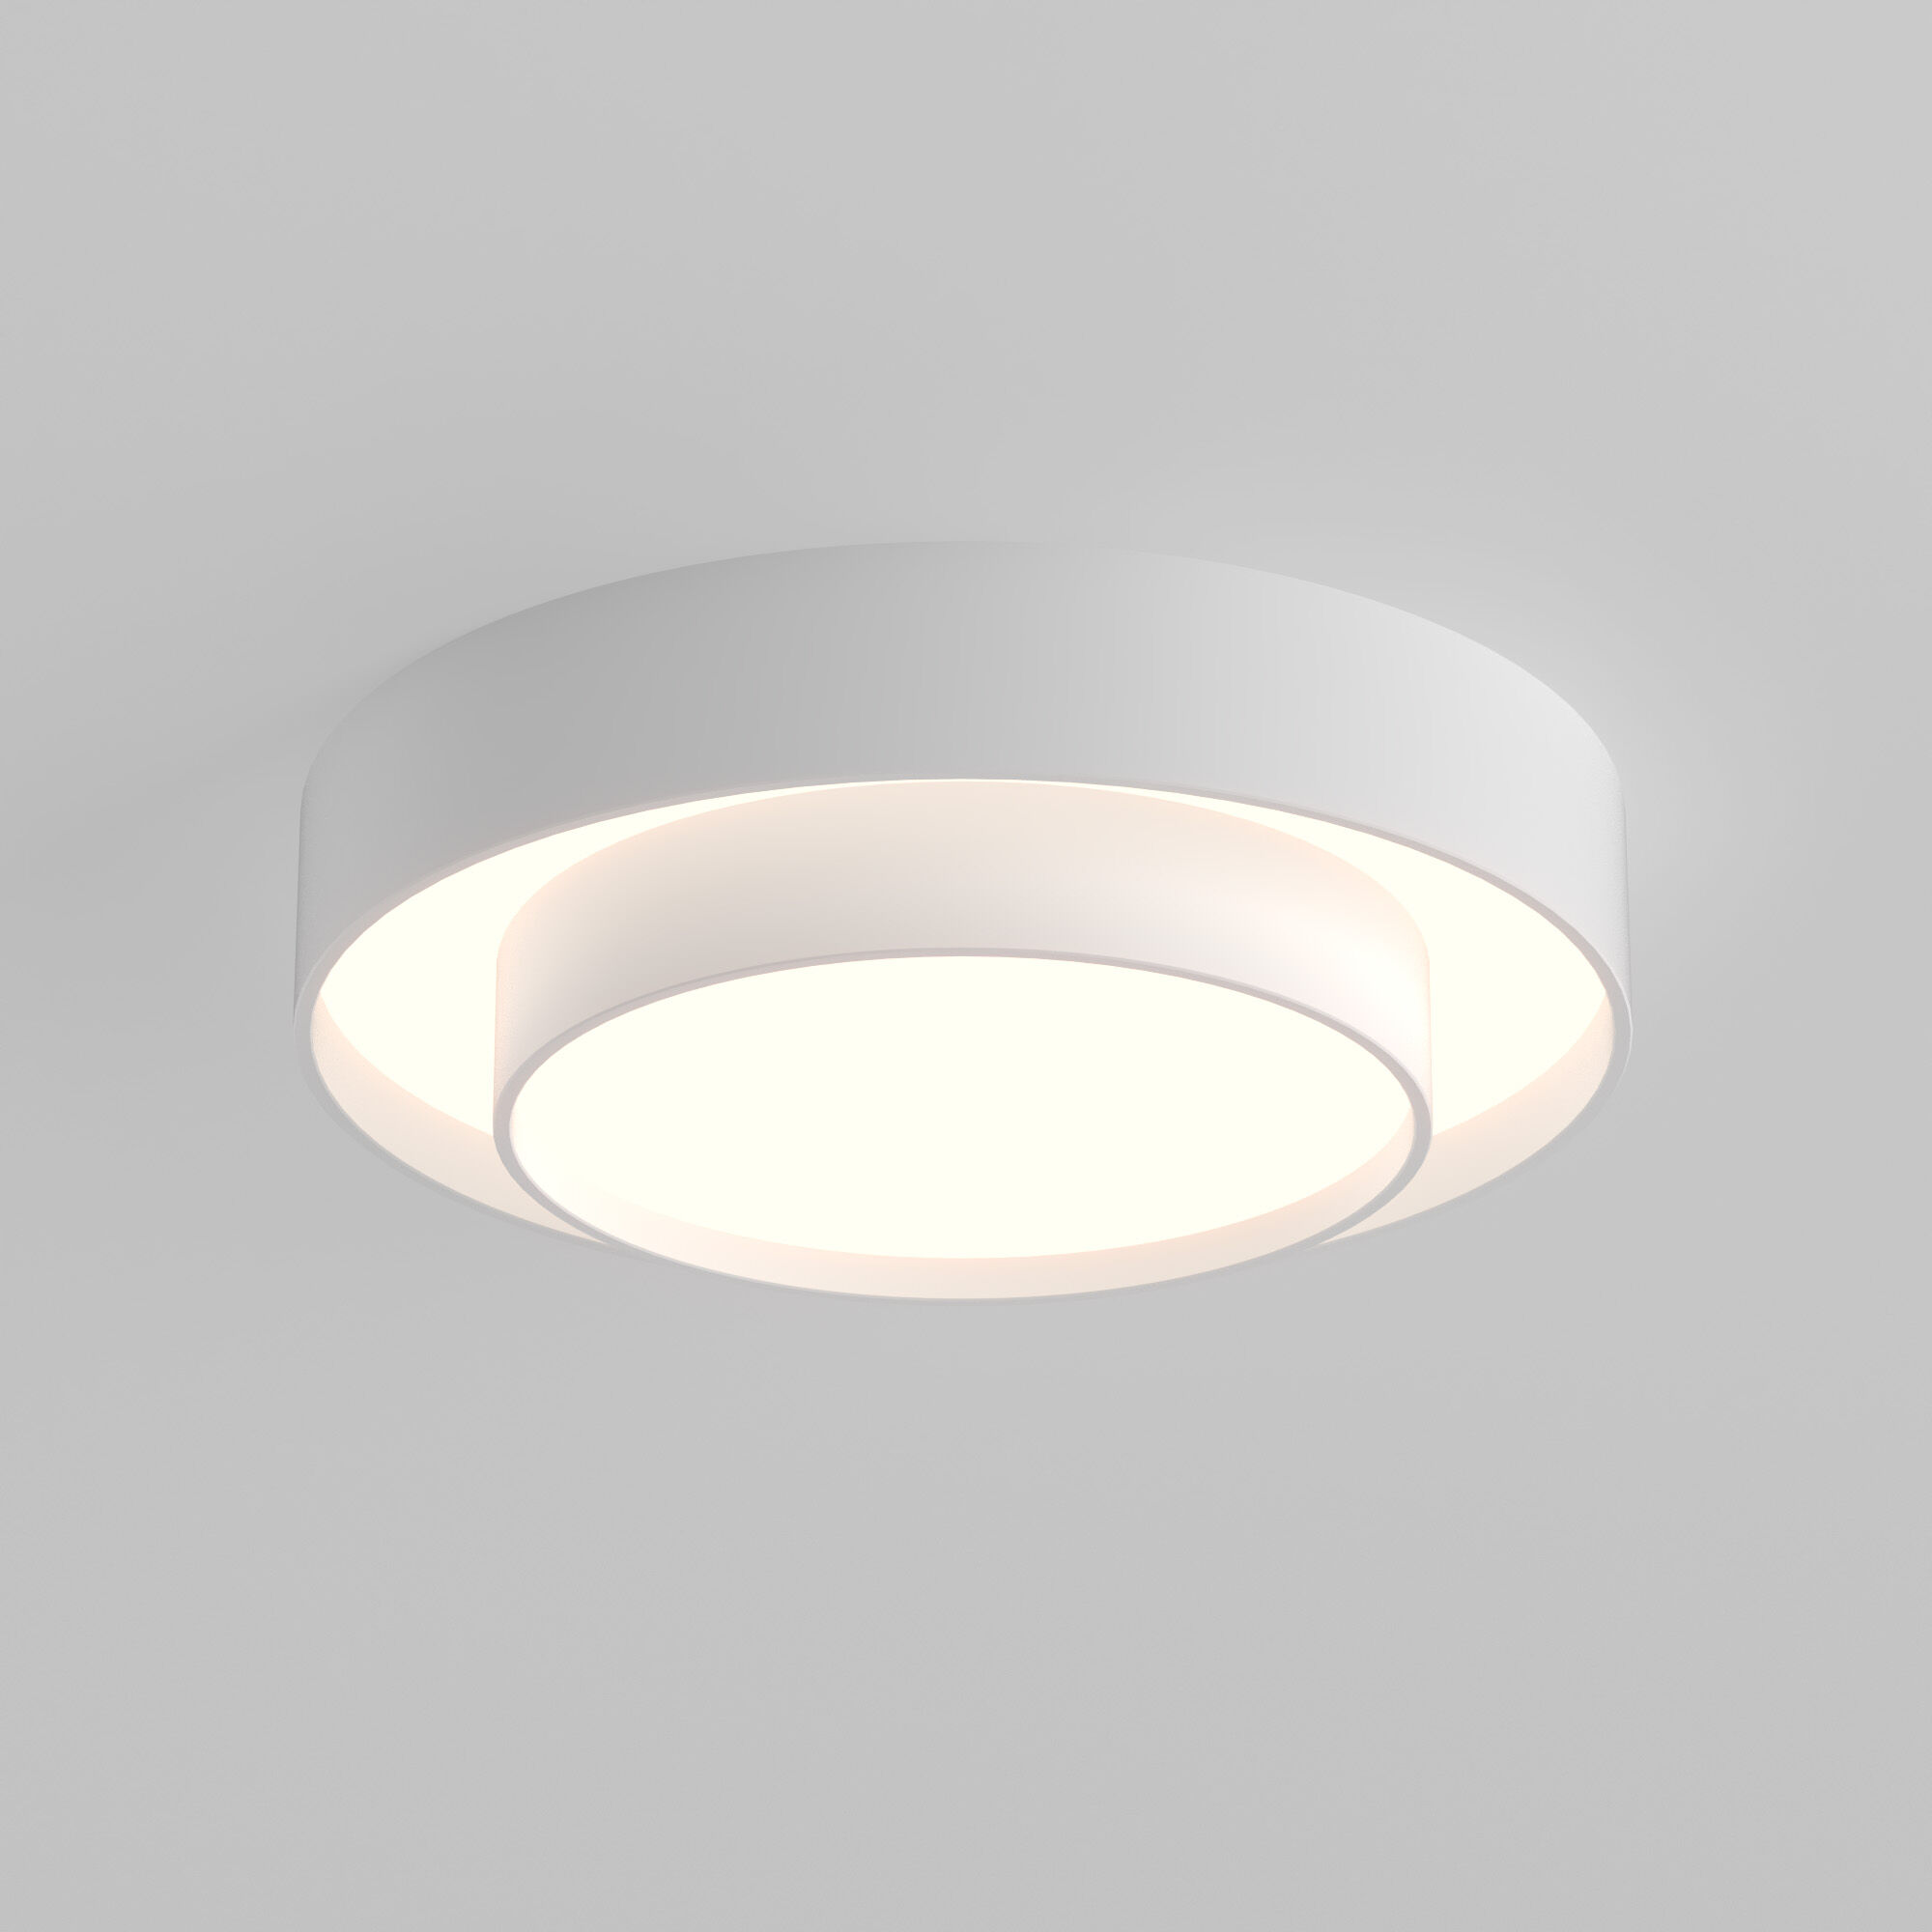 Потолочный светодиодный светильник с регулировкой яркости и цветовой температуры Eurosvet Force 90330/2 белый. Фото 1